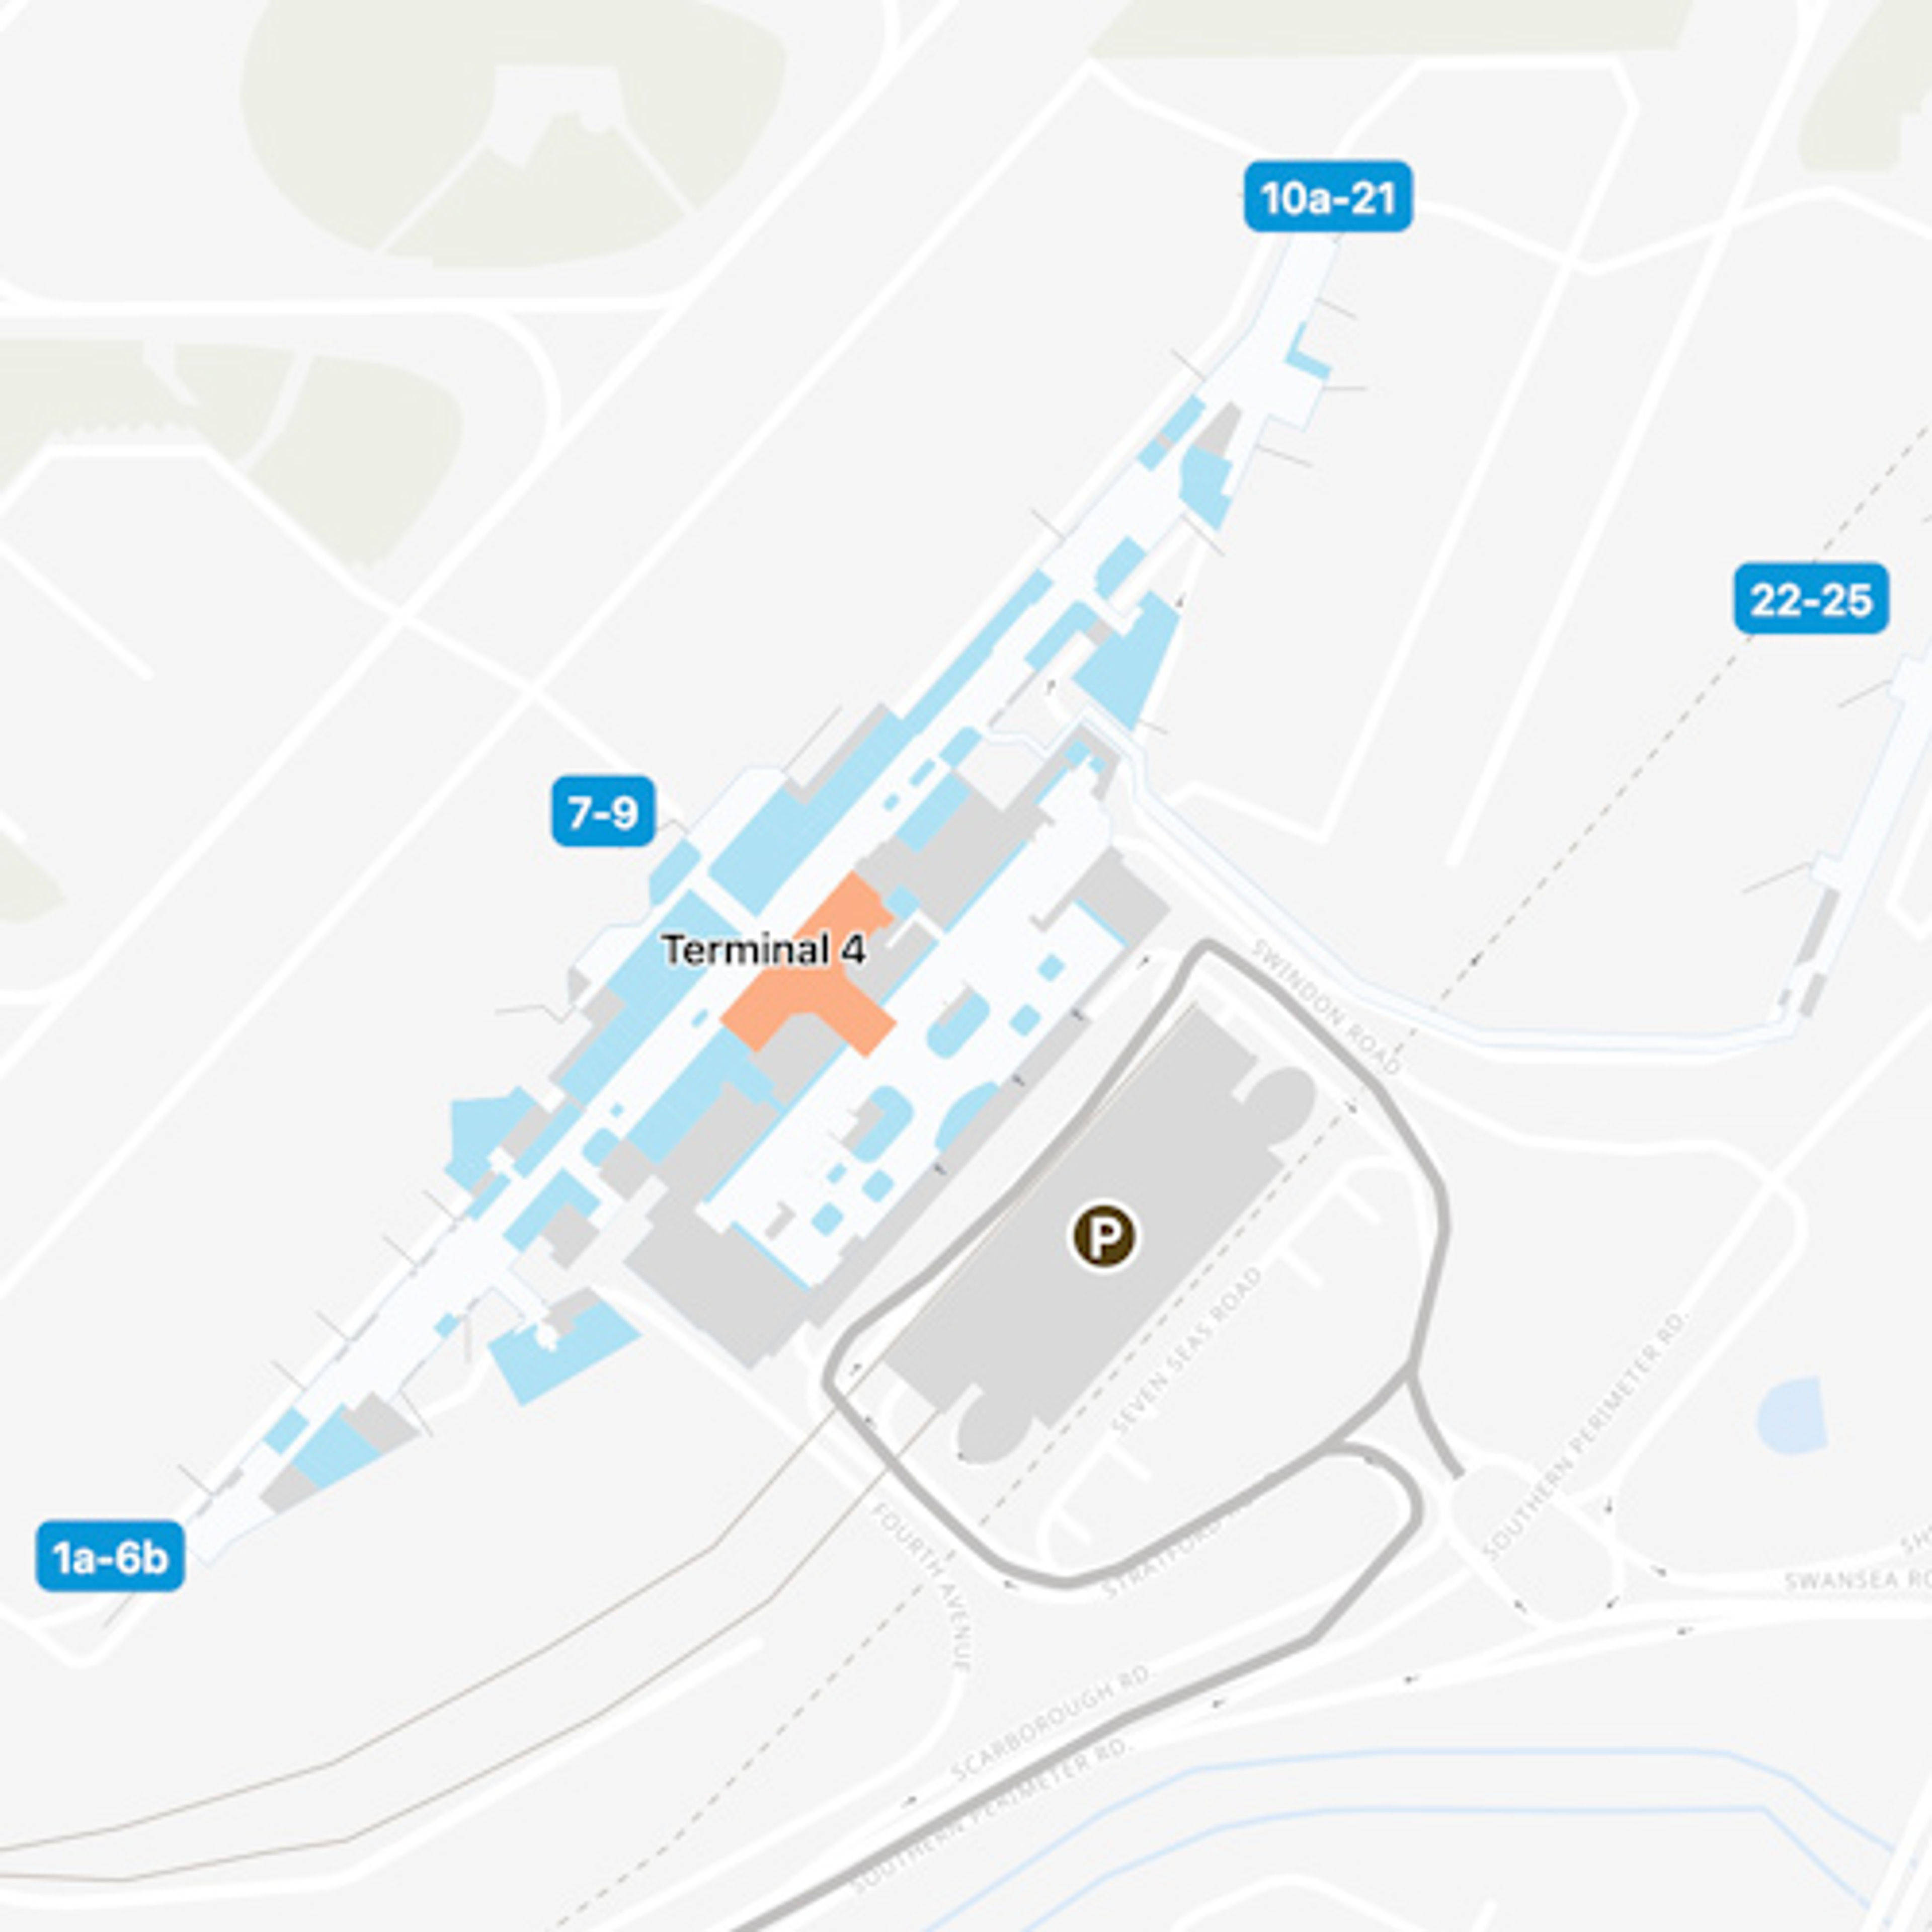 LHR Terminal 4 Map